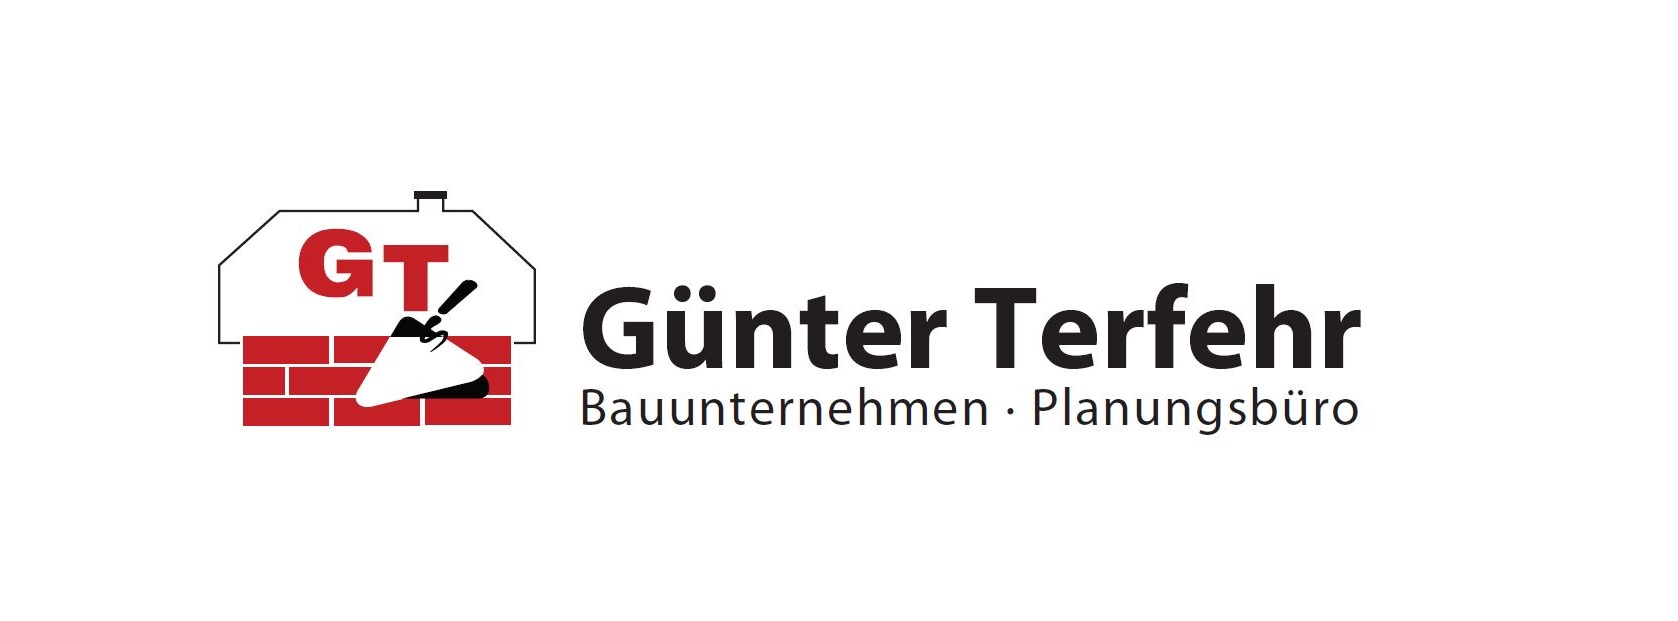 Bauunternehmen und Planungsbüro Günter Terfehr Bautechniker GmbH & Co. KG